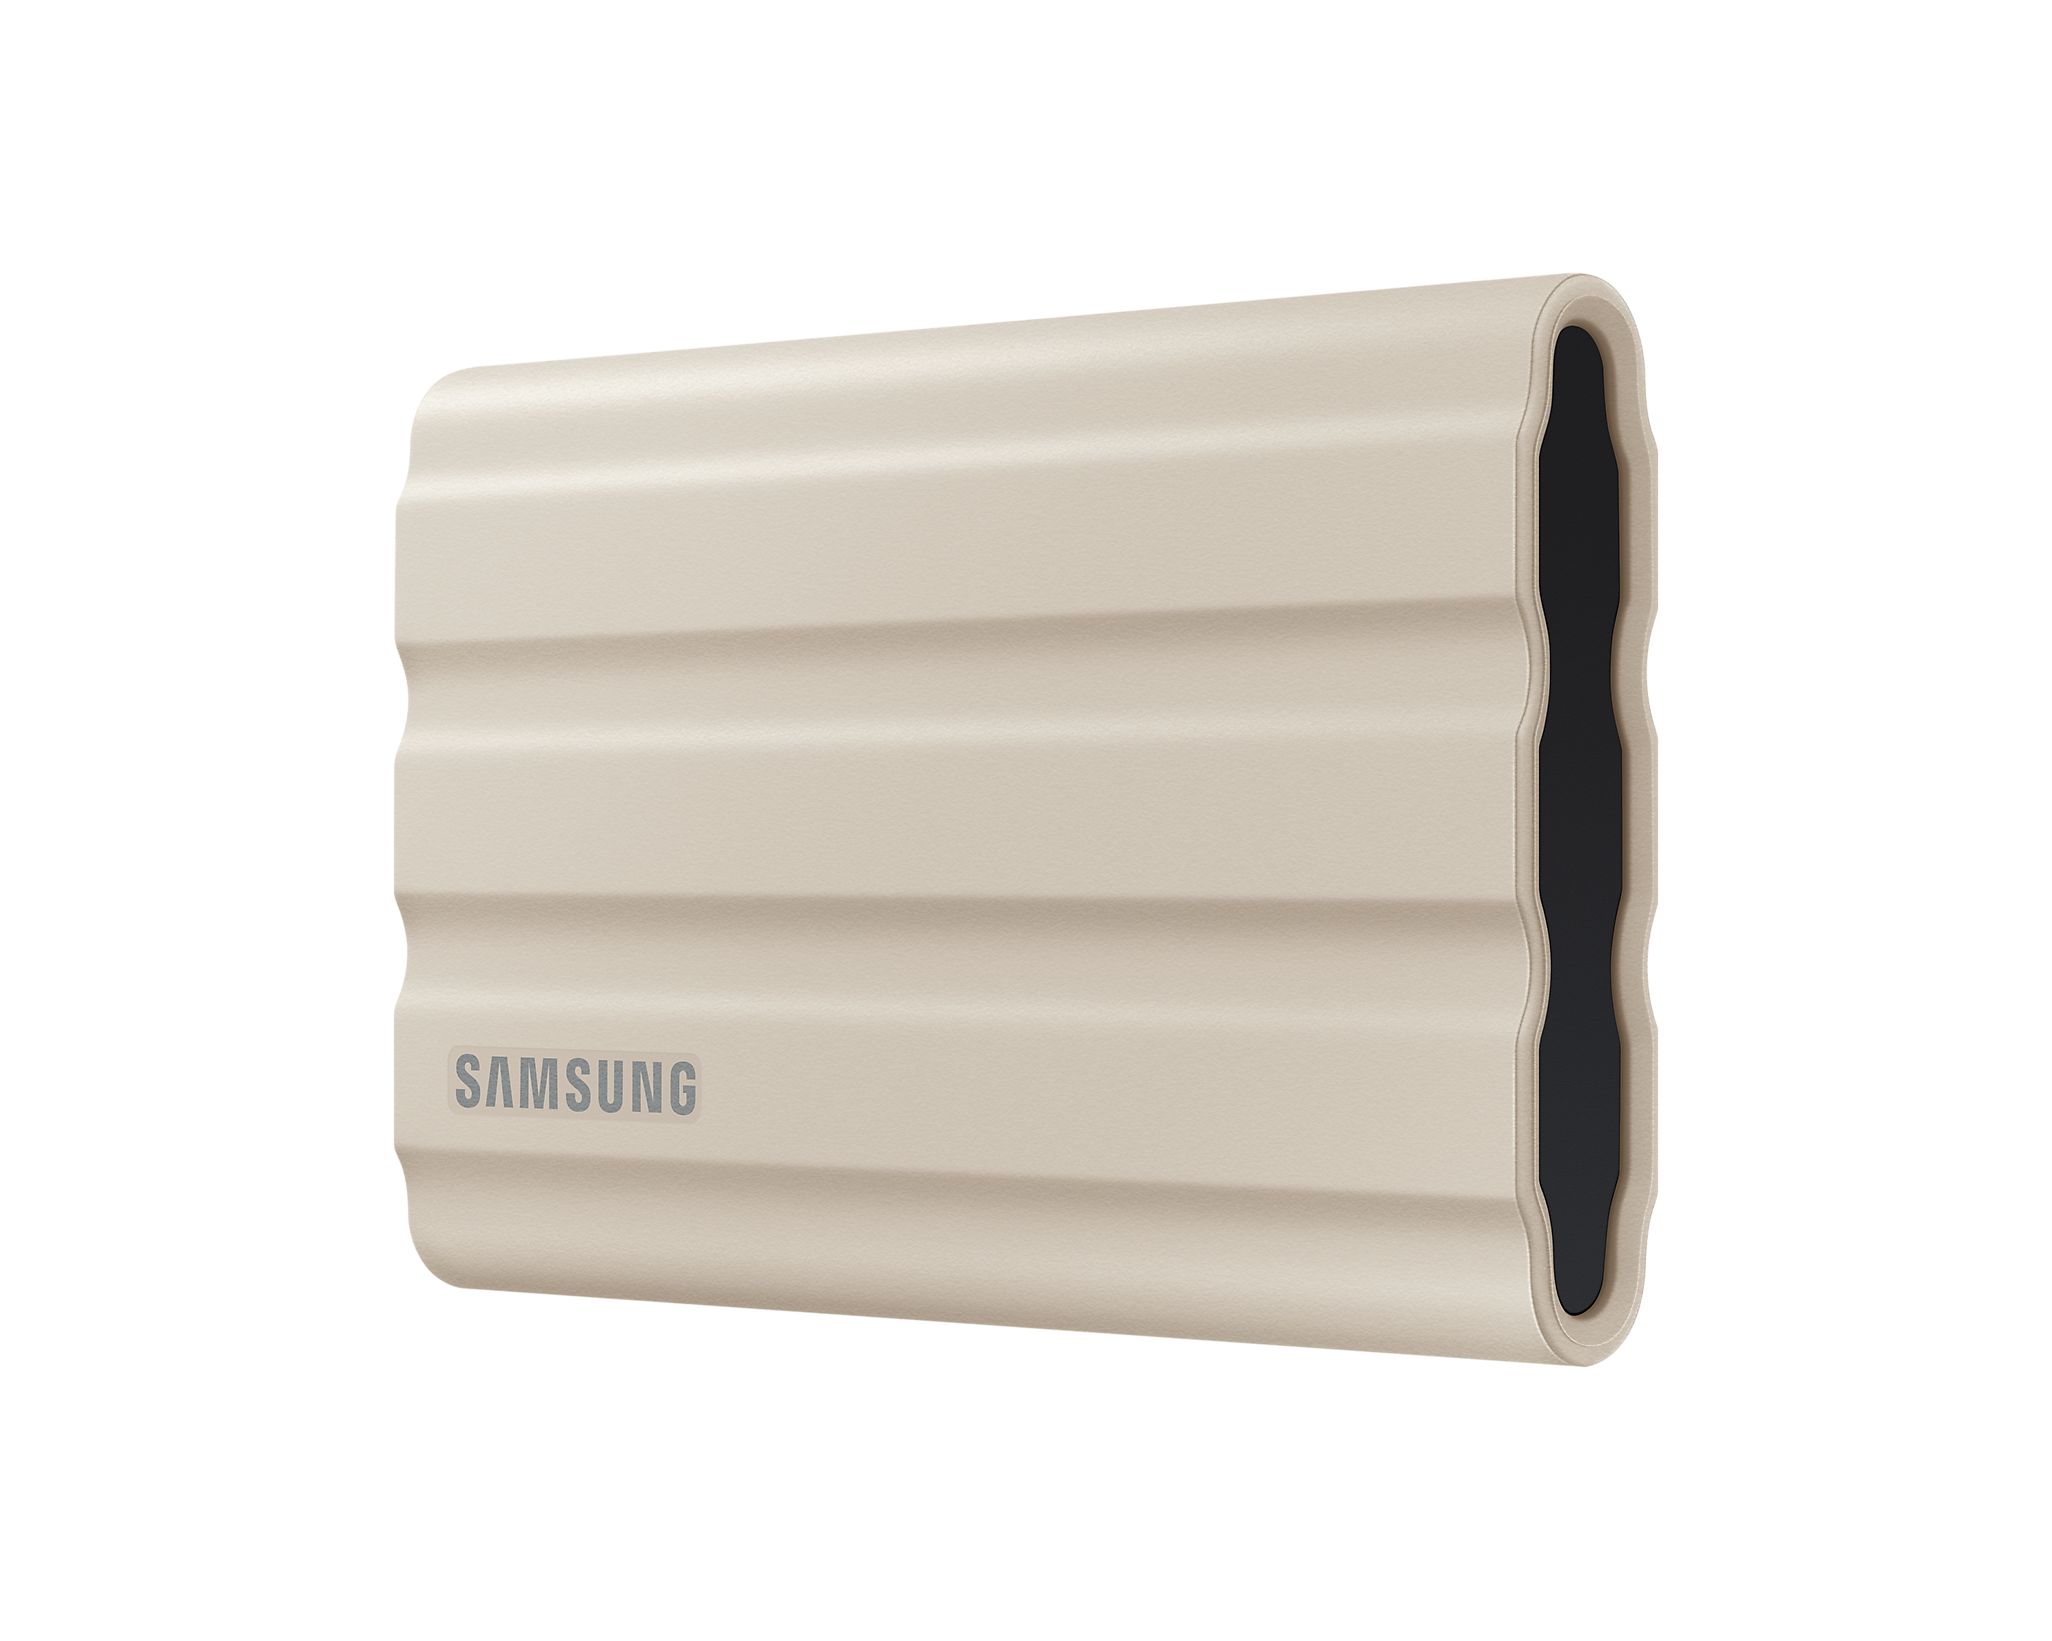 Disque SSD externe SAMSUNG T7 Shield 1To Noir - infinytech-reunion